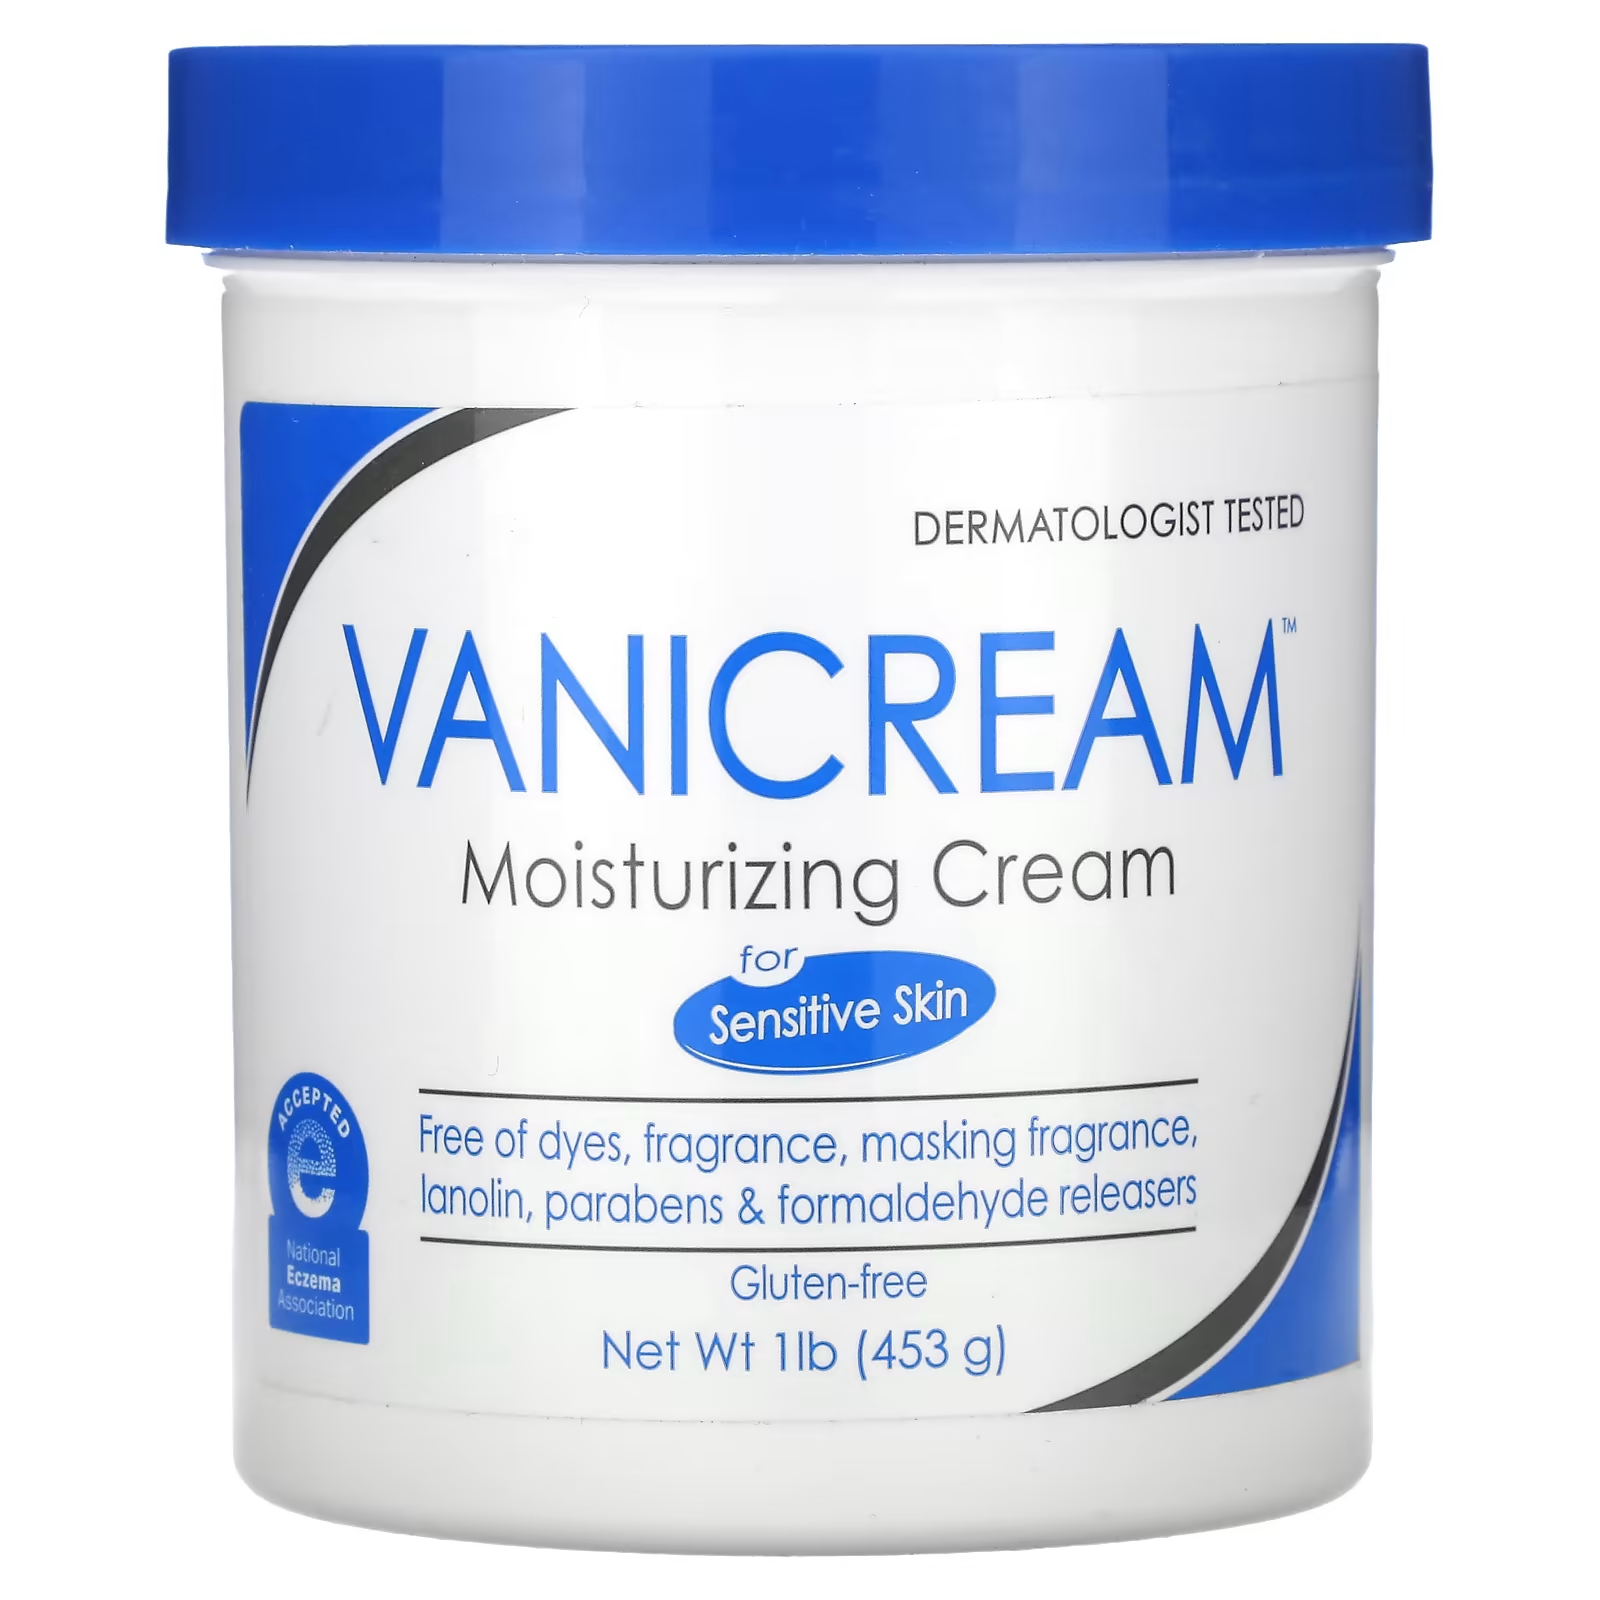 Увлажняющий крем Vanicream для сухой, раздраженной или чувствительной кожи, 1 фунт (453 г) vanicream увлажняющий крем для сухой раздраженной или чувствительной кожи 453 г 1 фунт